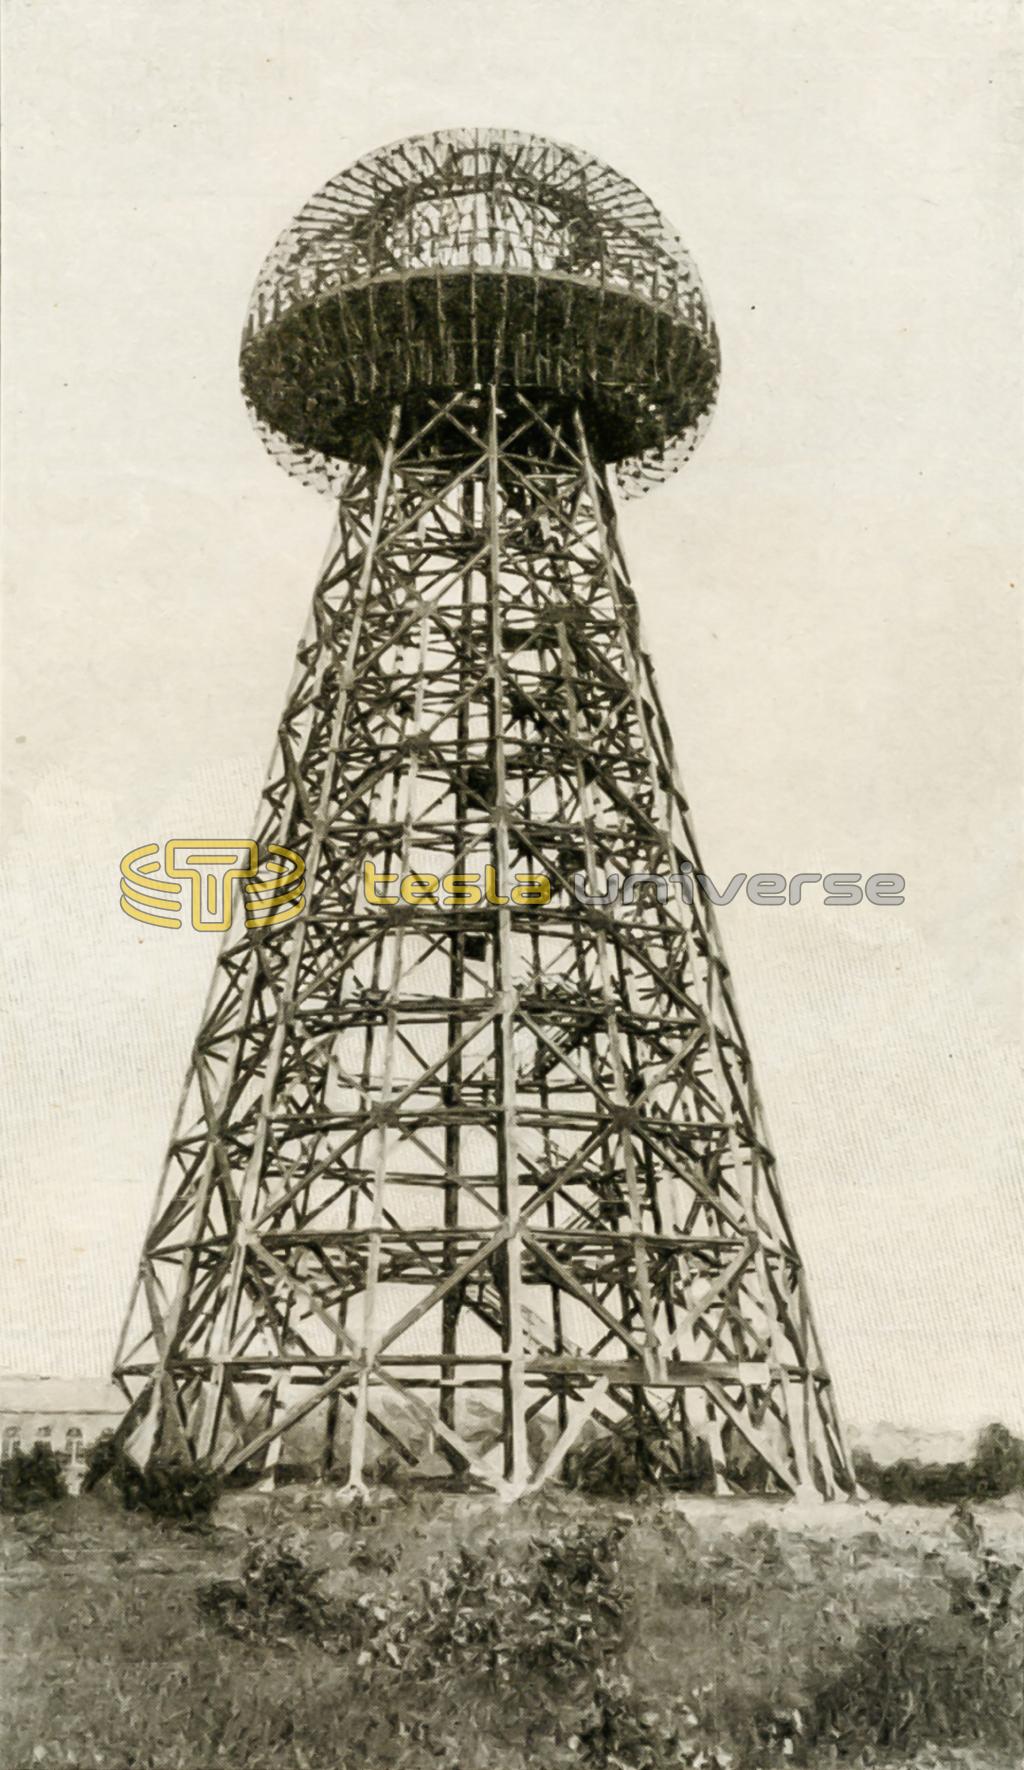 Wardenclyffe tower - Nikola Tesla's dream system of worldwide wireless power